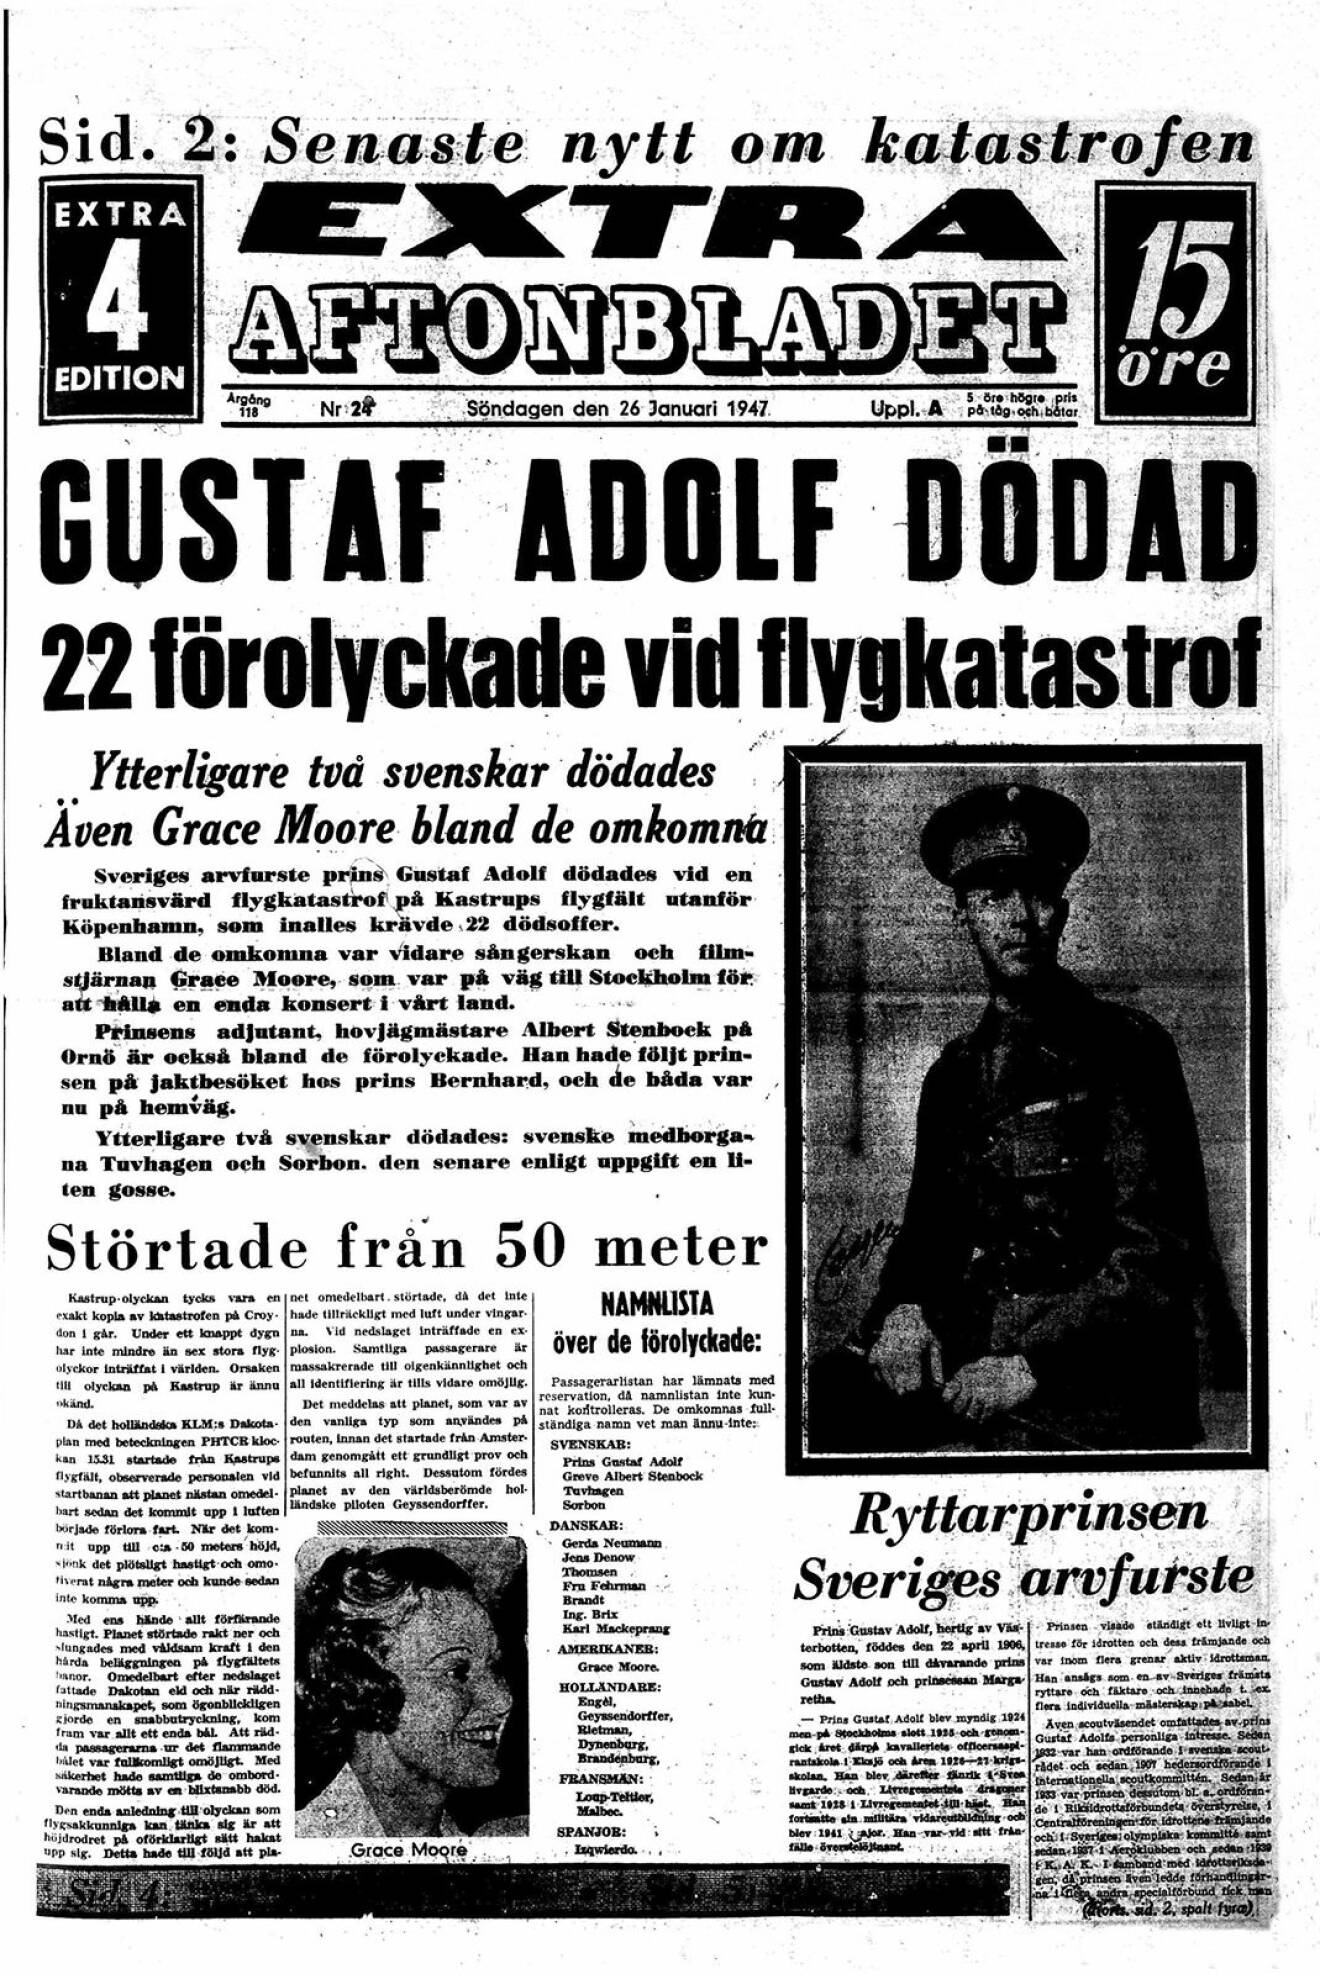 Aftonbladet - Gustaf Adolf dödad.